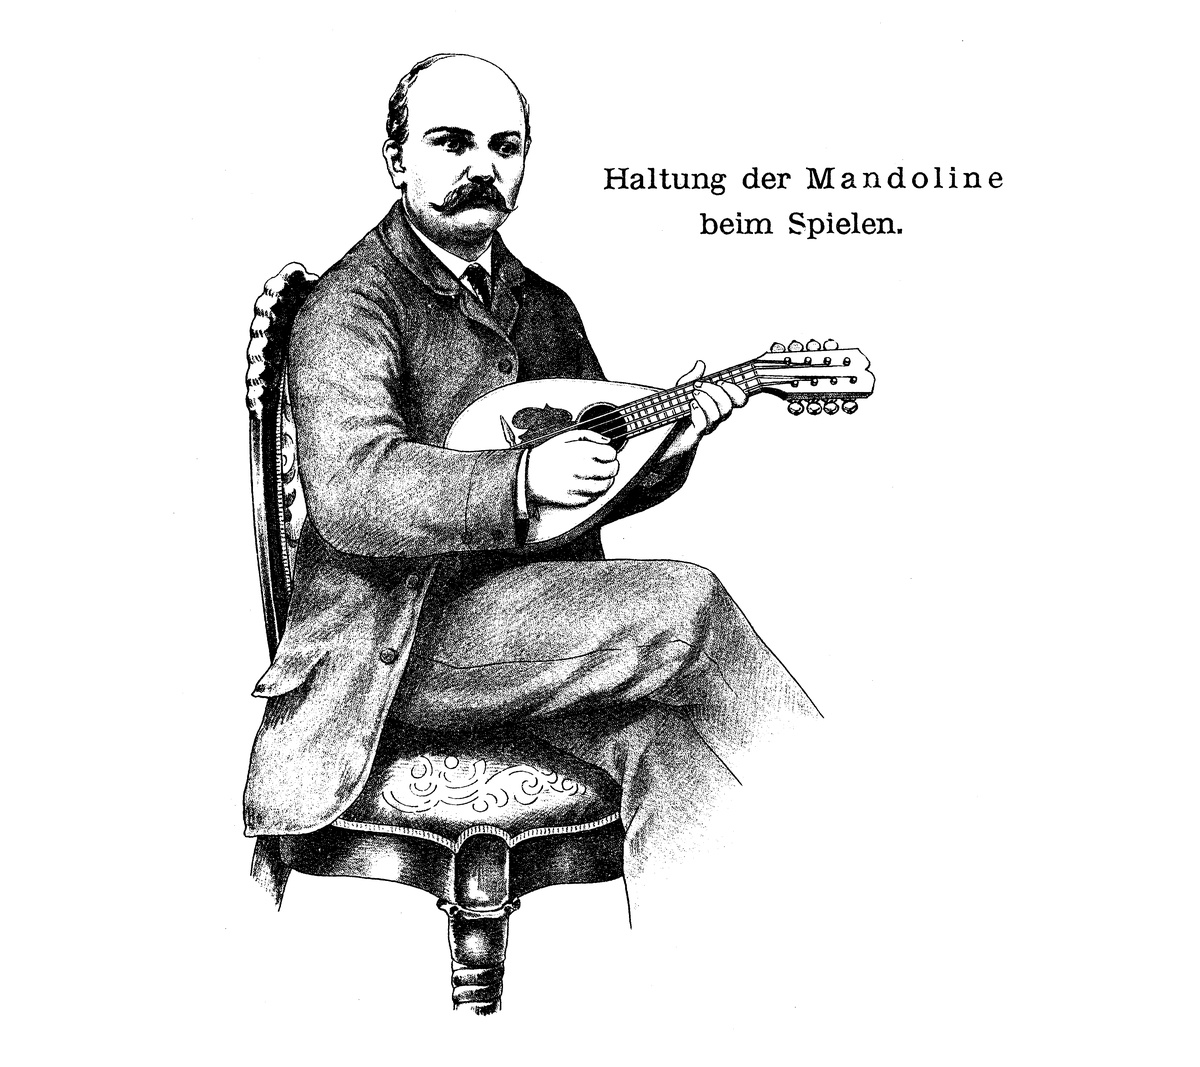 Haltung der Mandoline Branzoli